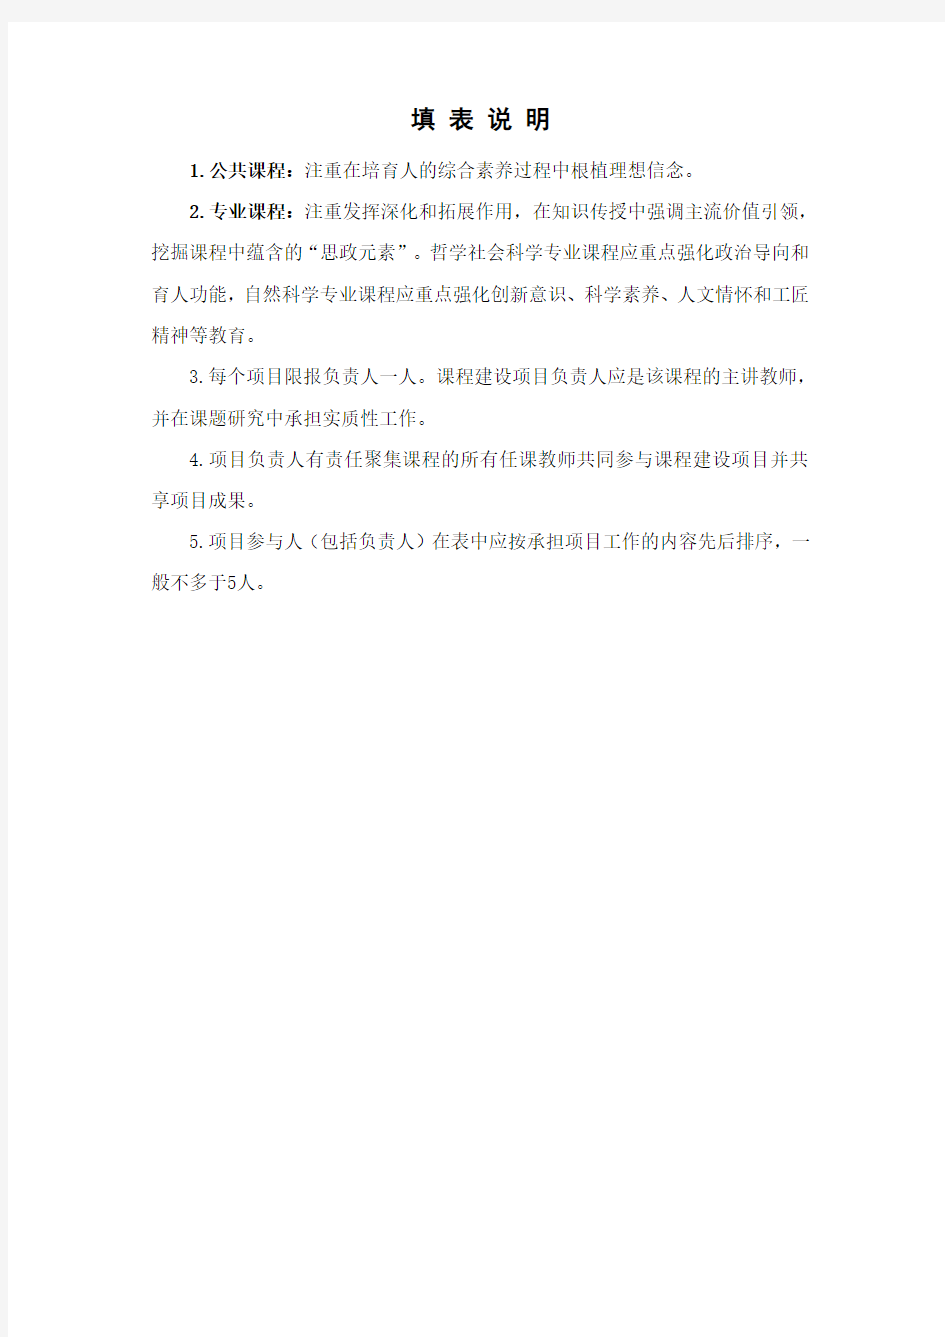 上海理工大学研究生课程思政示范课程建设立项申报书